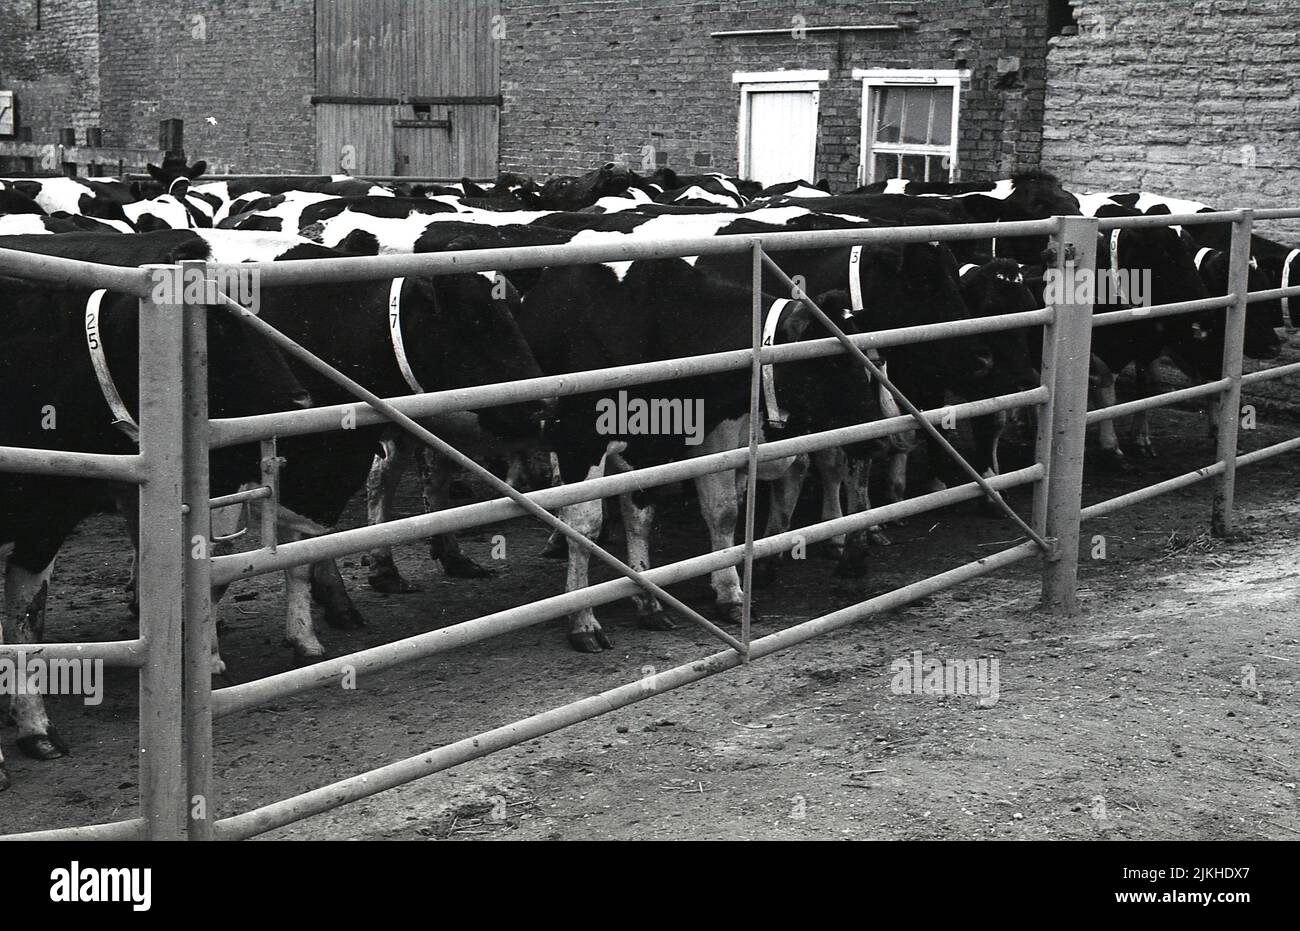 1960s, vacas lecheras históricas, numeradas, se juntaron en un área cerrada en el patio de la granja, antes de ordeñar, Inglaterra, Reino Unido. Foto de stock